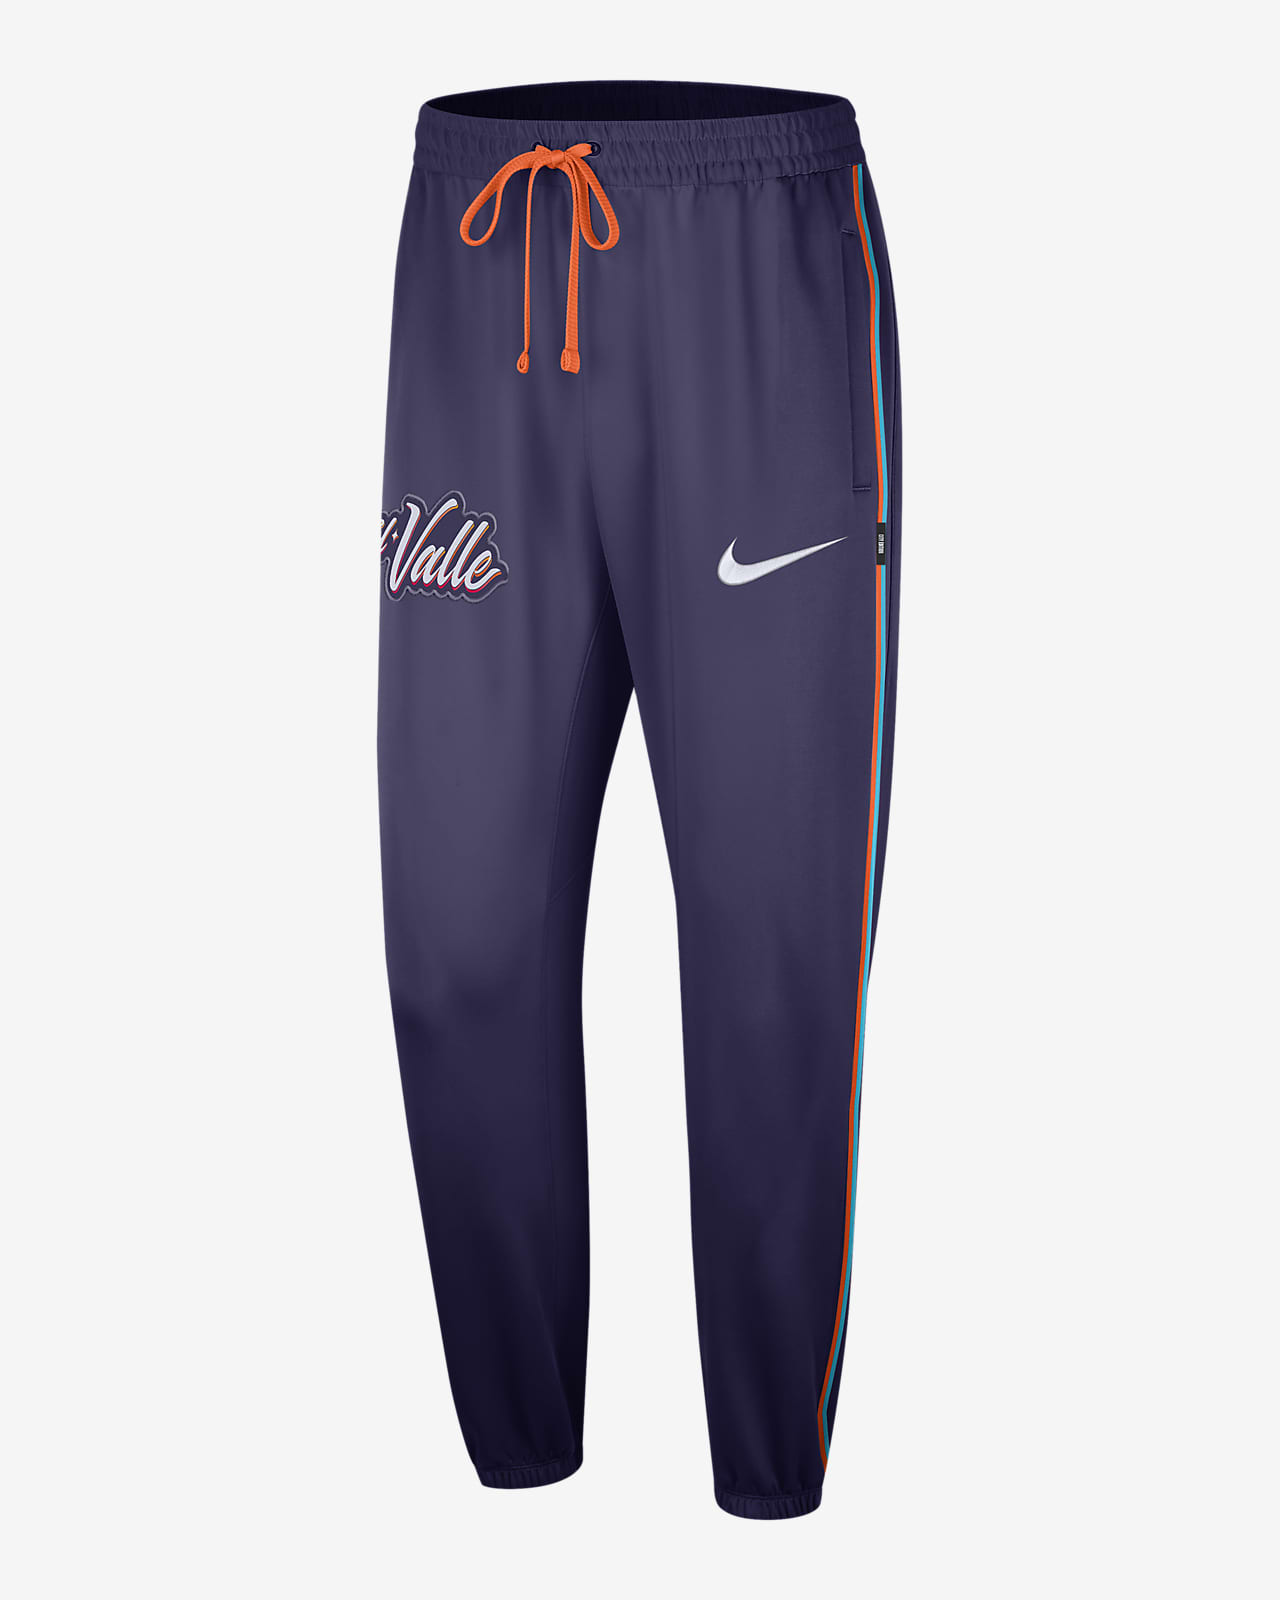 Phoenix Suns Showtime City Edition Nike Dri-FIT NBA-bukser til mænd